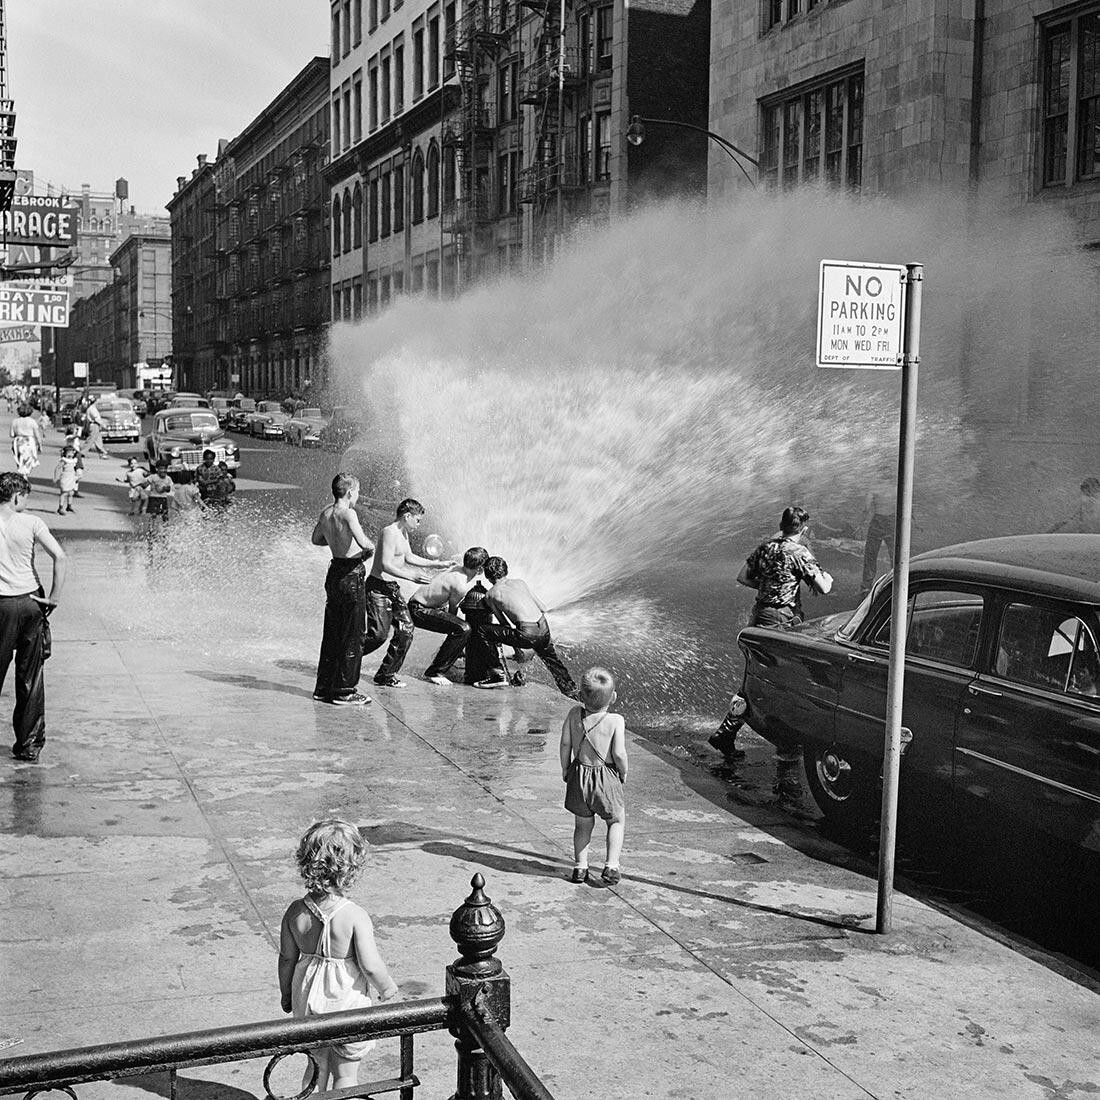 Июнь 1954 г., Нью-Йорк, штат Нью-Йорк. Фотограф Вивиан Майер